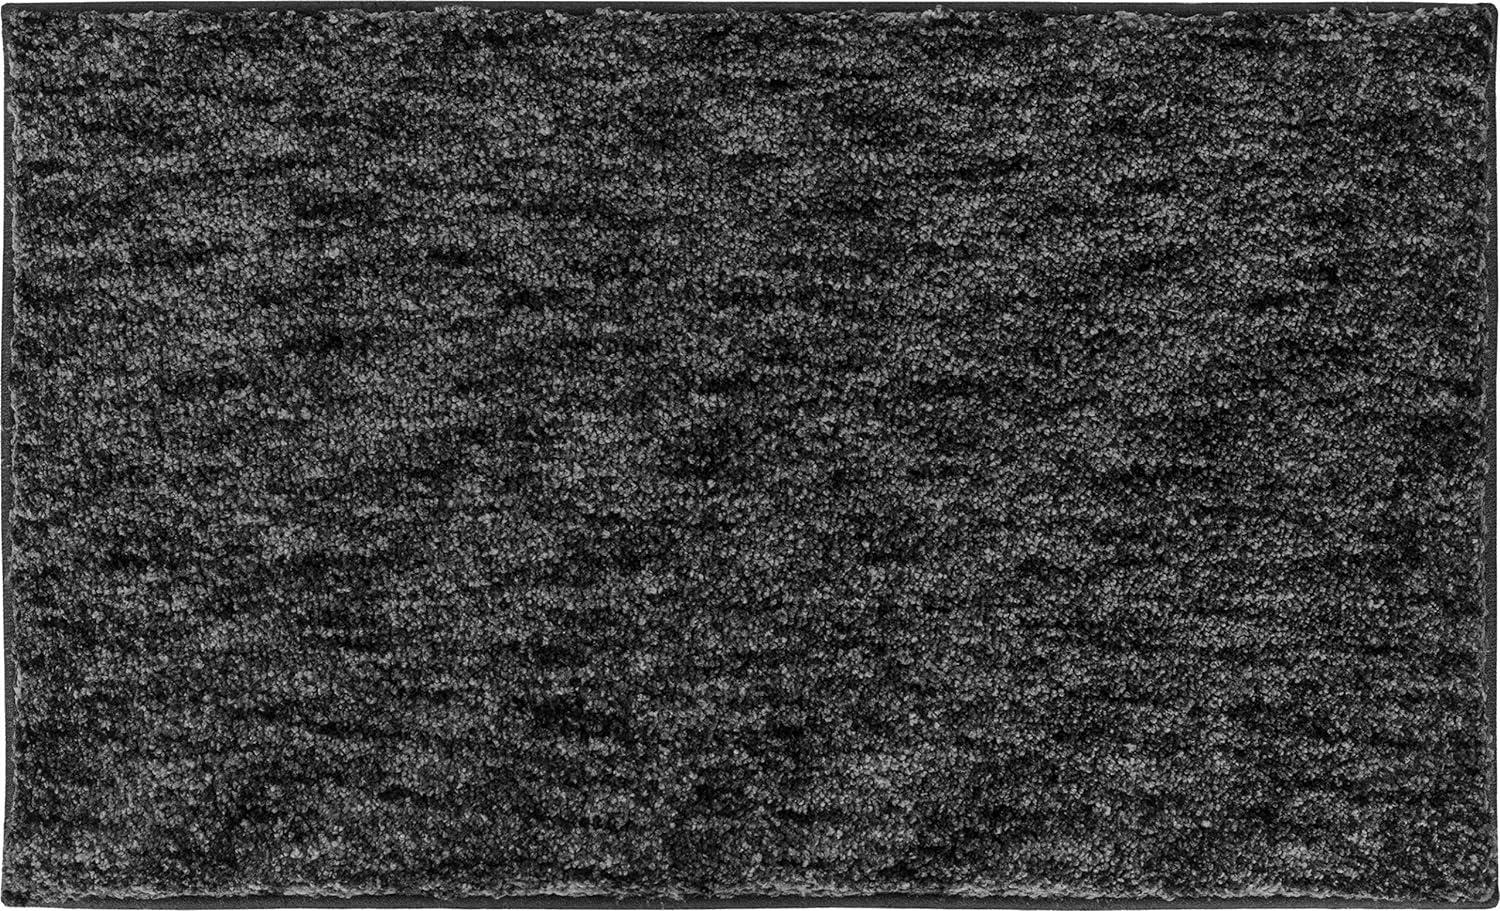 Grund Mirage Badteppich, Polyester, Anthrazit, 60 x 100 cm Bild 1